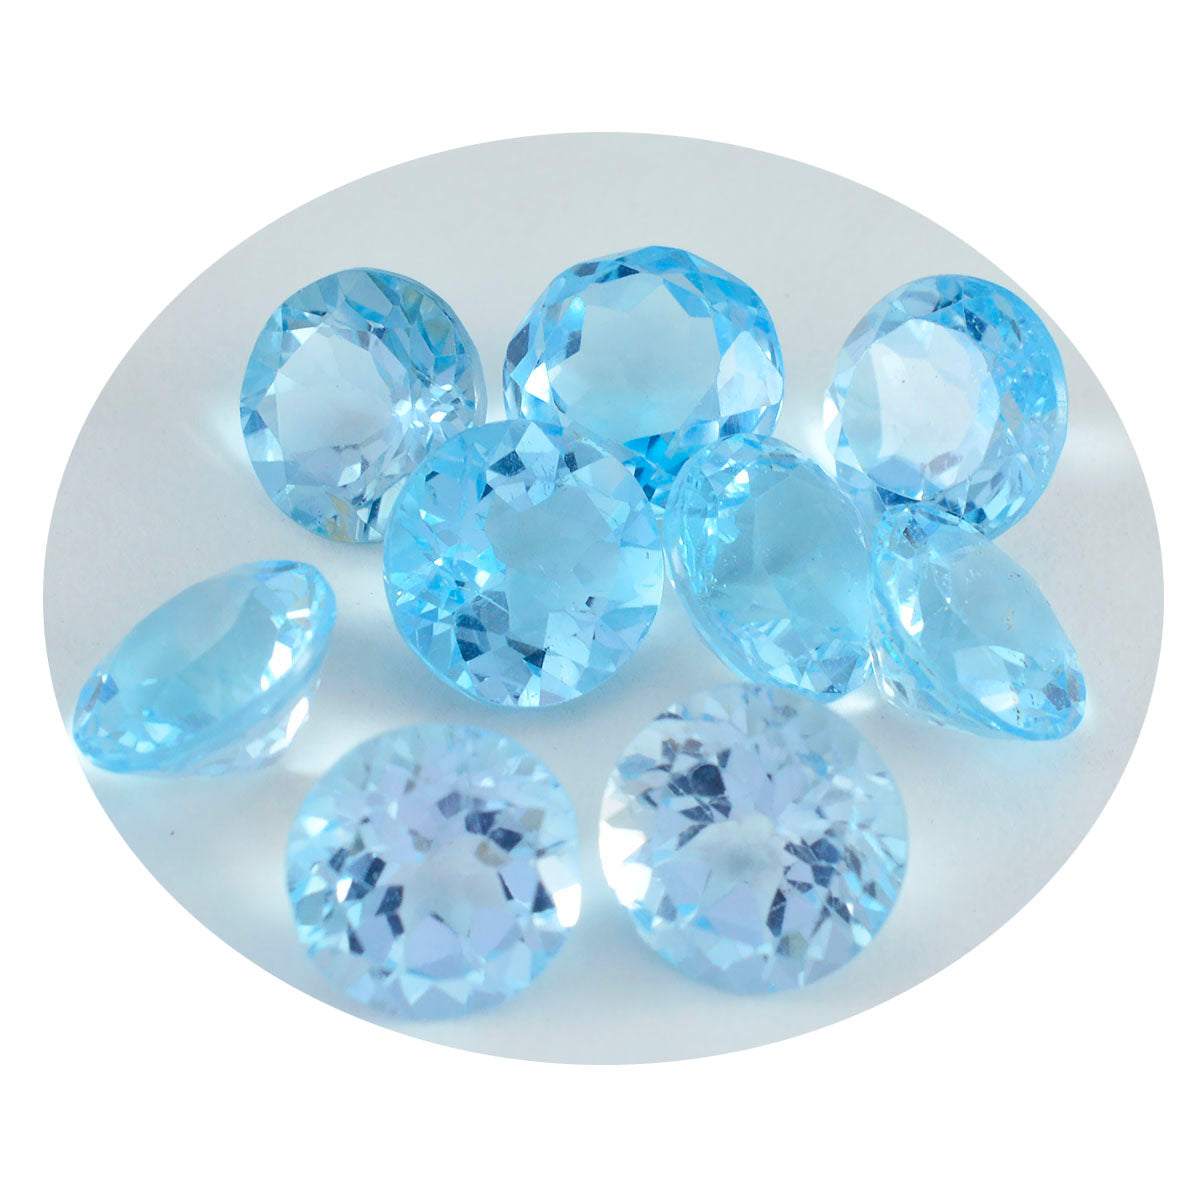 riyogems 1шт натуральный голубой топаз ограненный 10x10 мм круглая форма качественный драгоценный камень